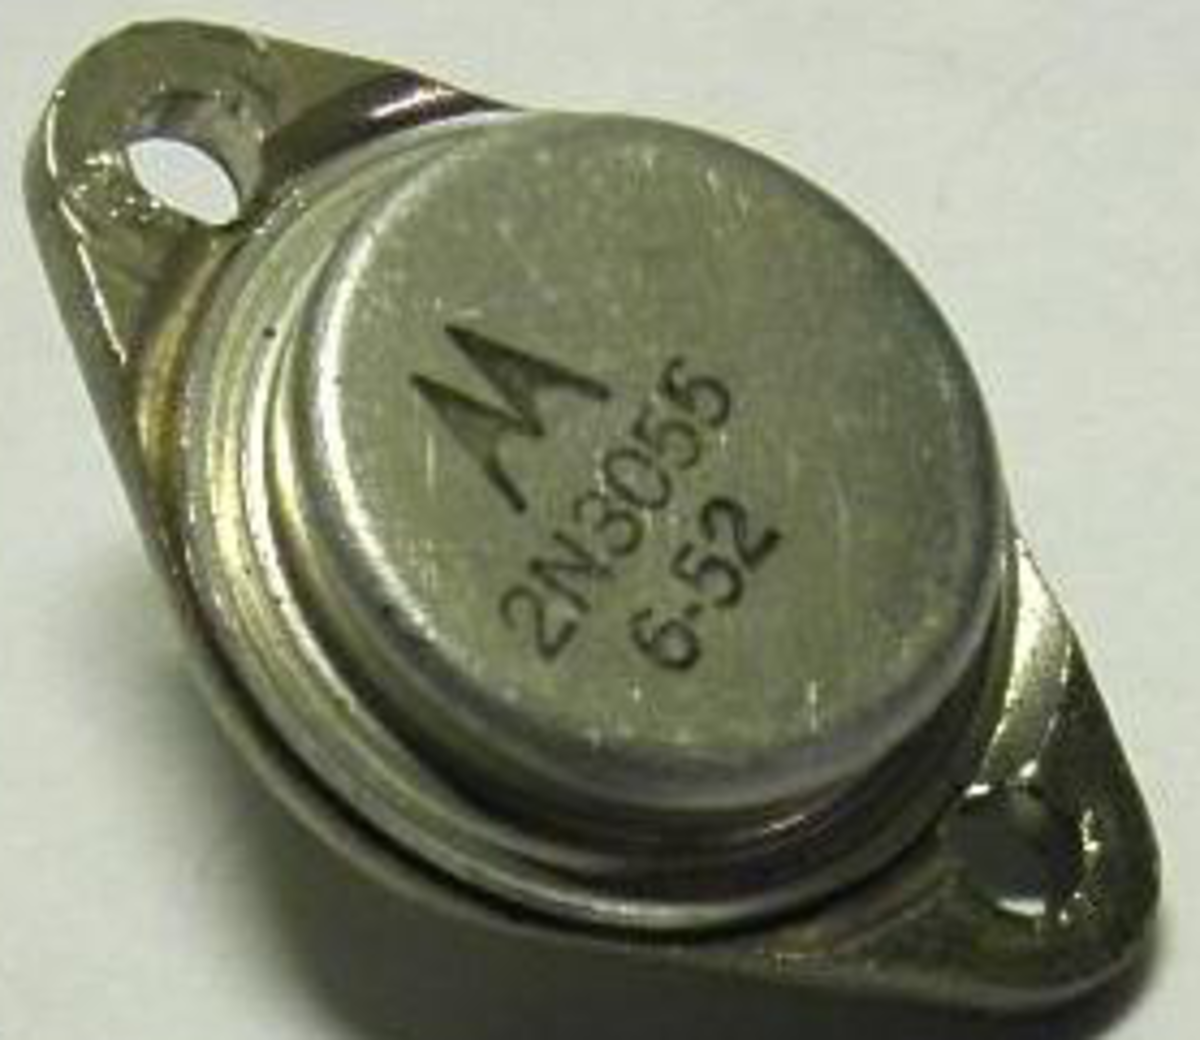 Motorola Transistor (in casing)